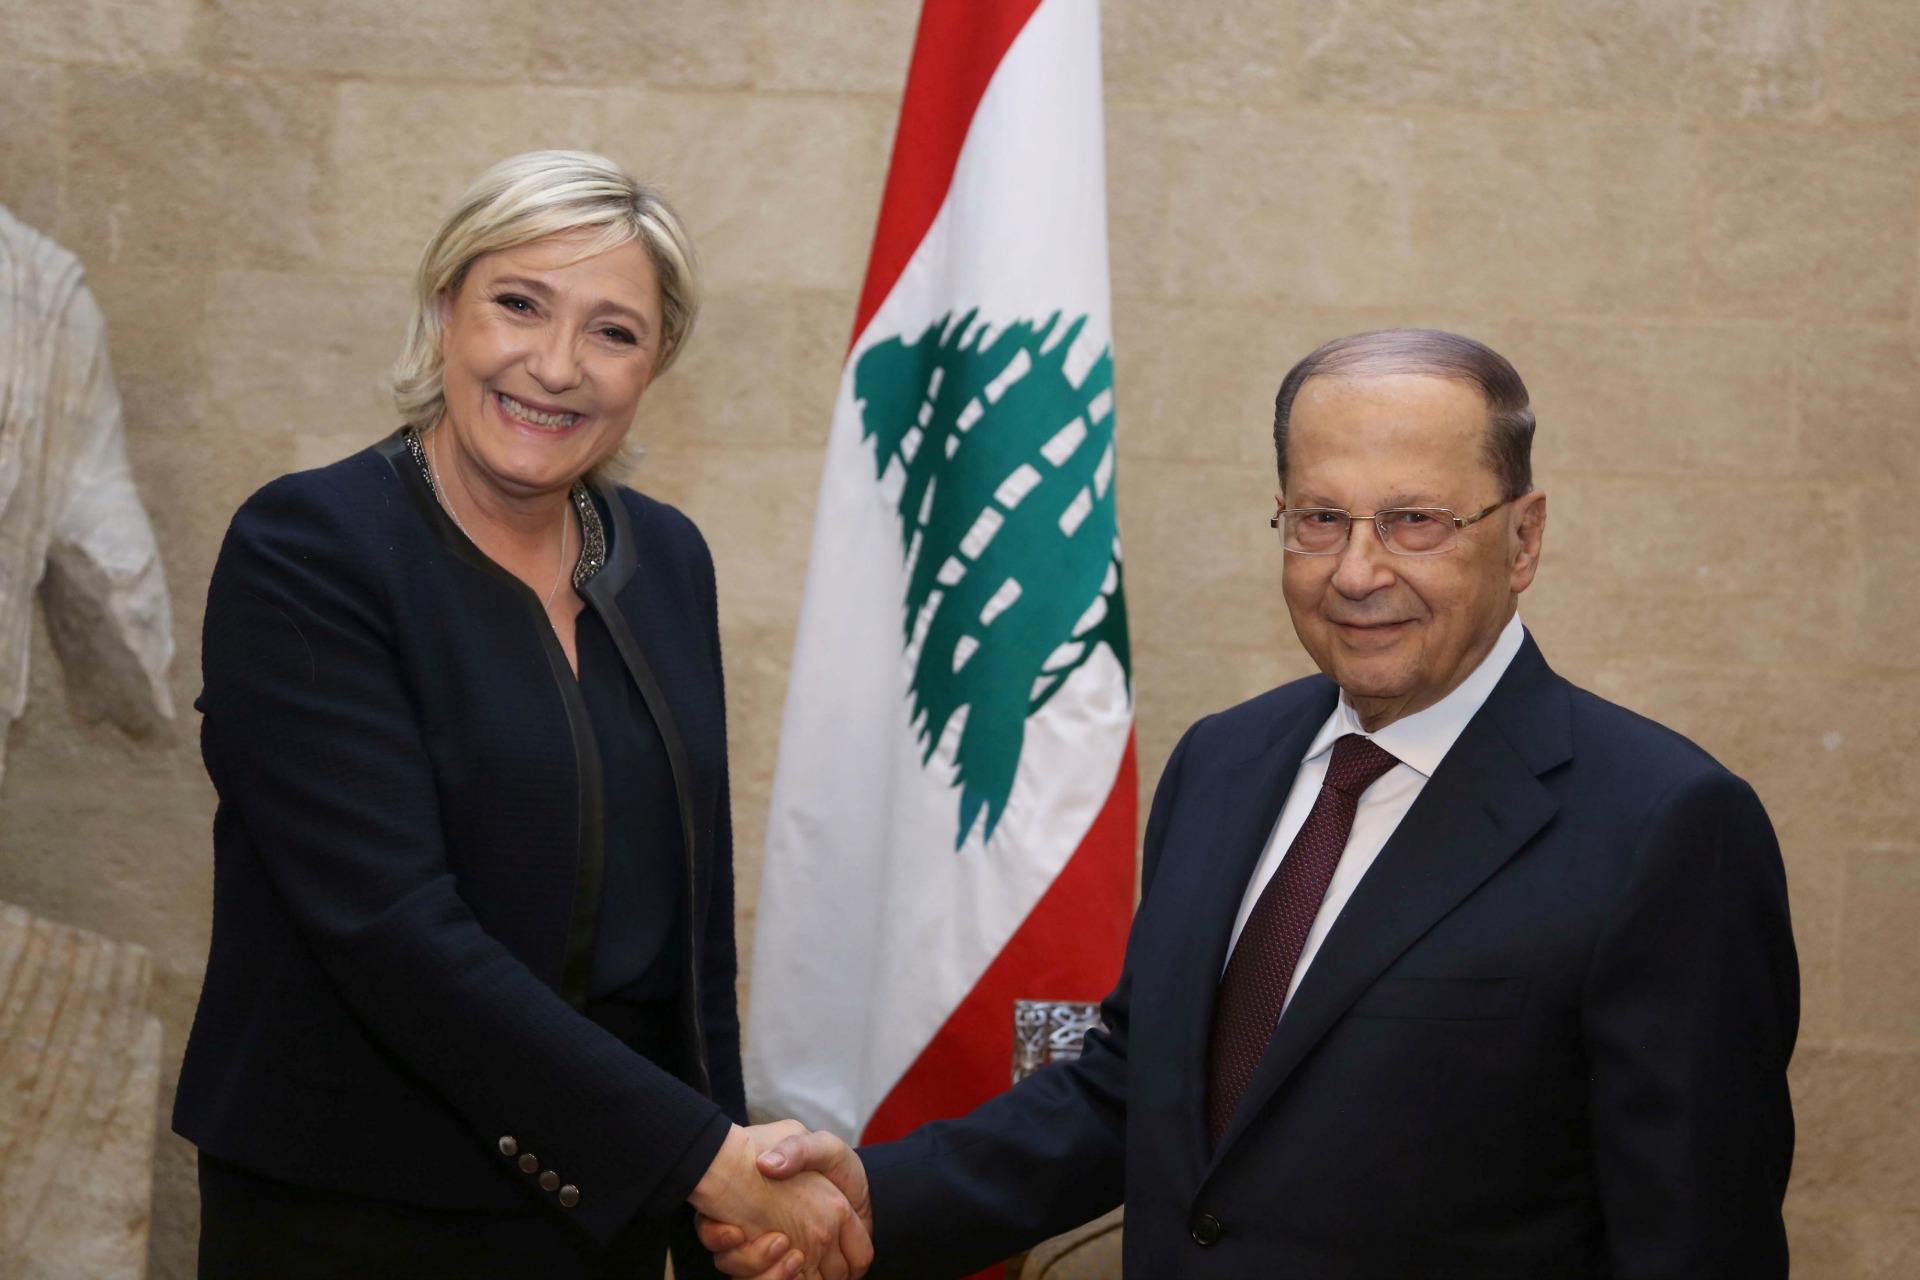 Le Pen viaja a Líbano en busca de apoyos para su candidatura